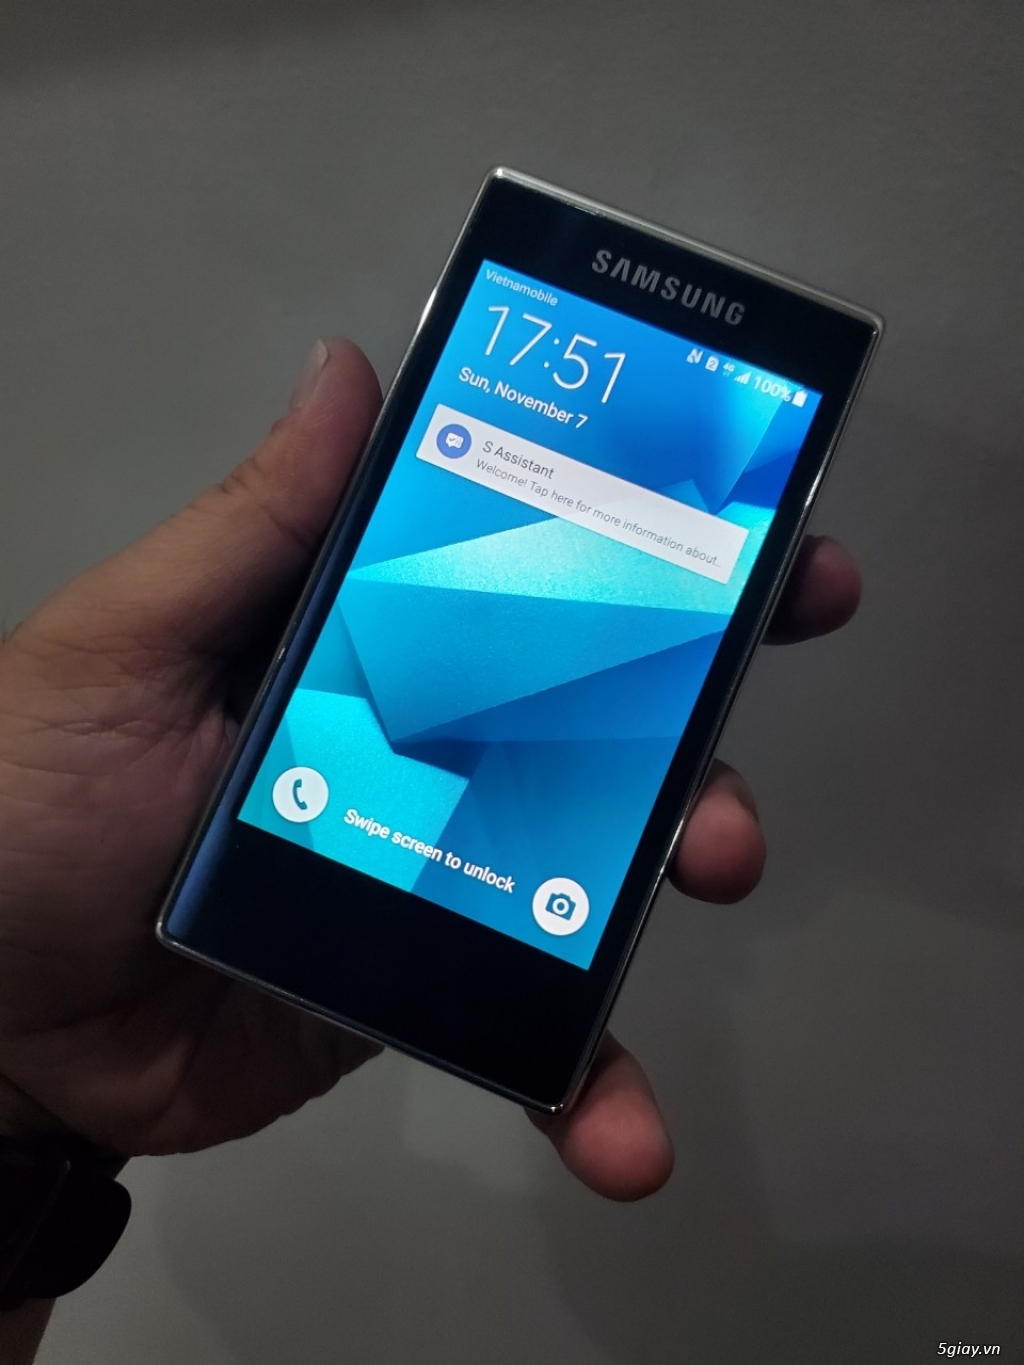 Hàng độc: Samsung G9198 nắp gập 2 màn hình đời cuối màu xanh siêu đẹp - 5